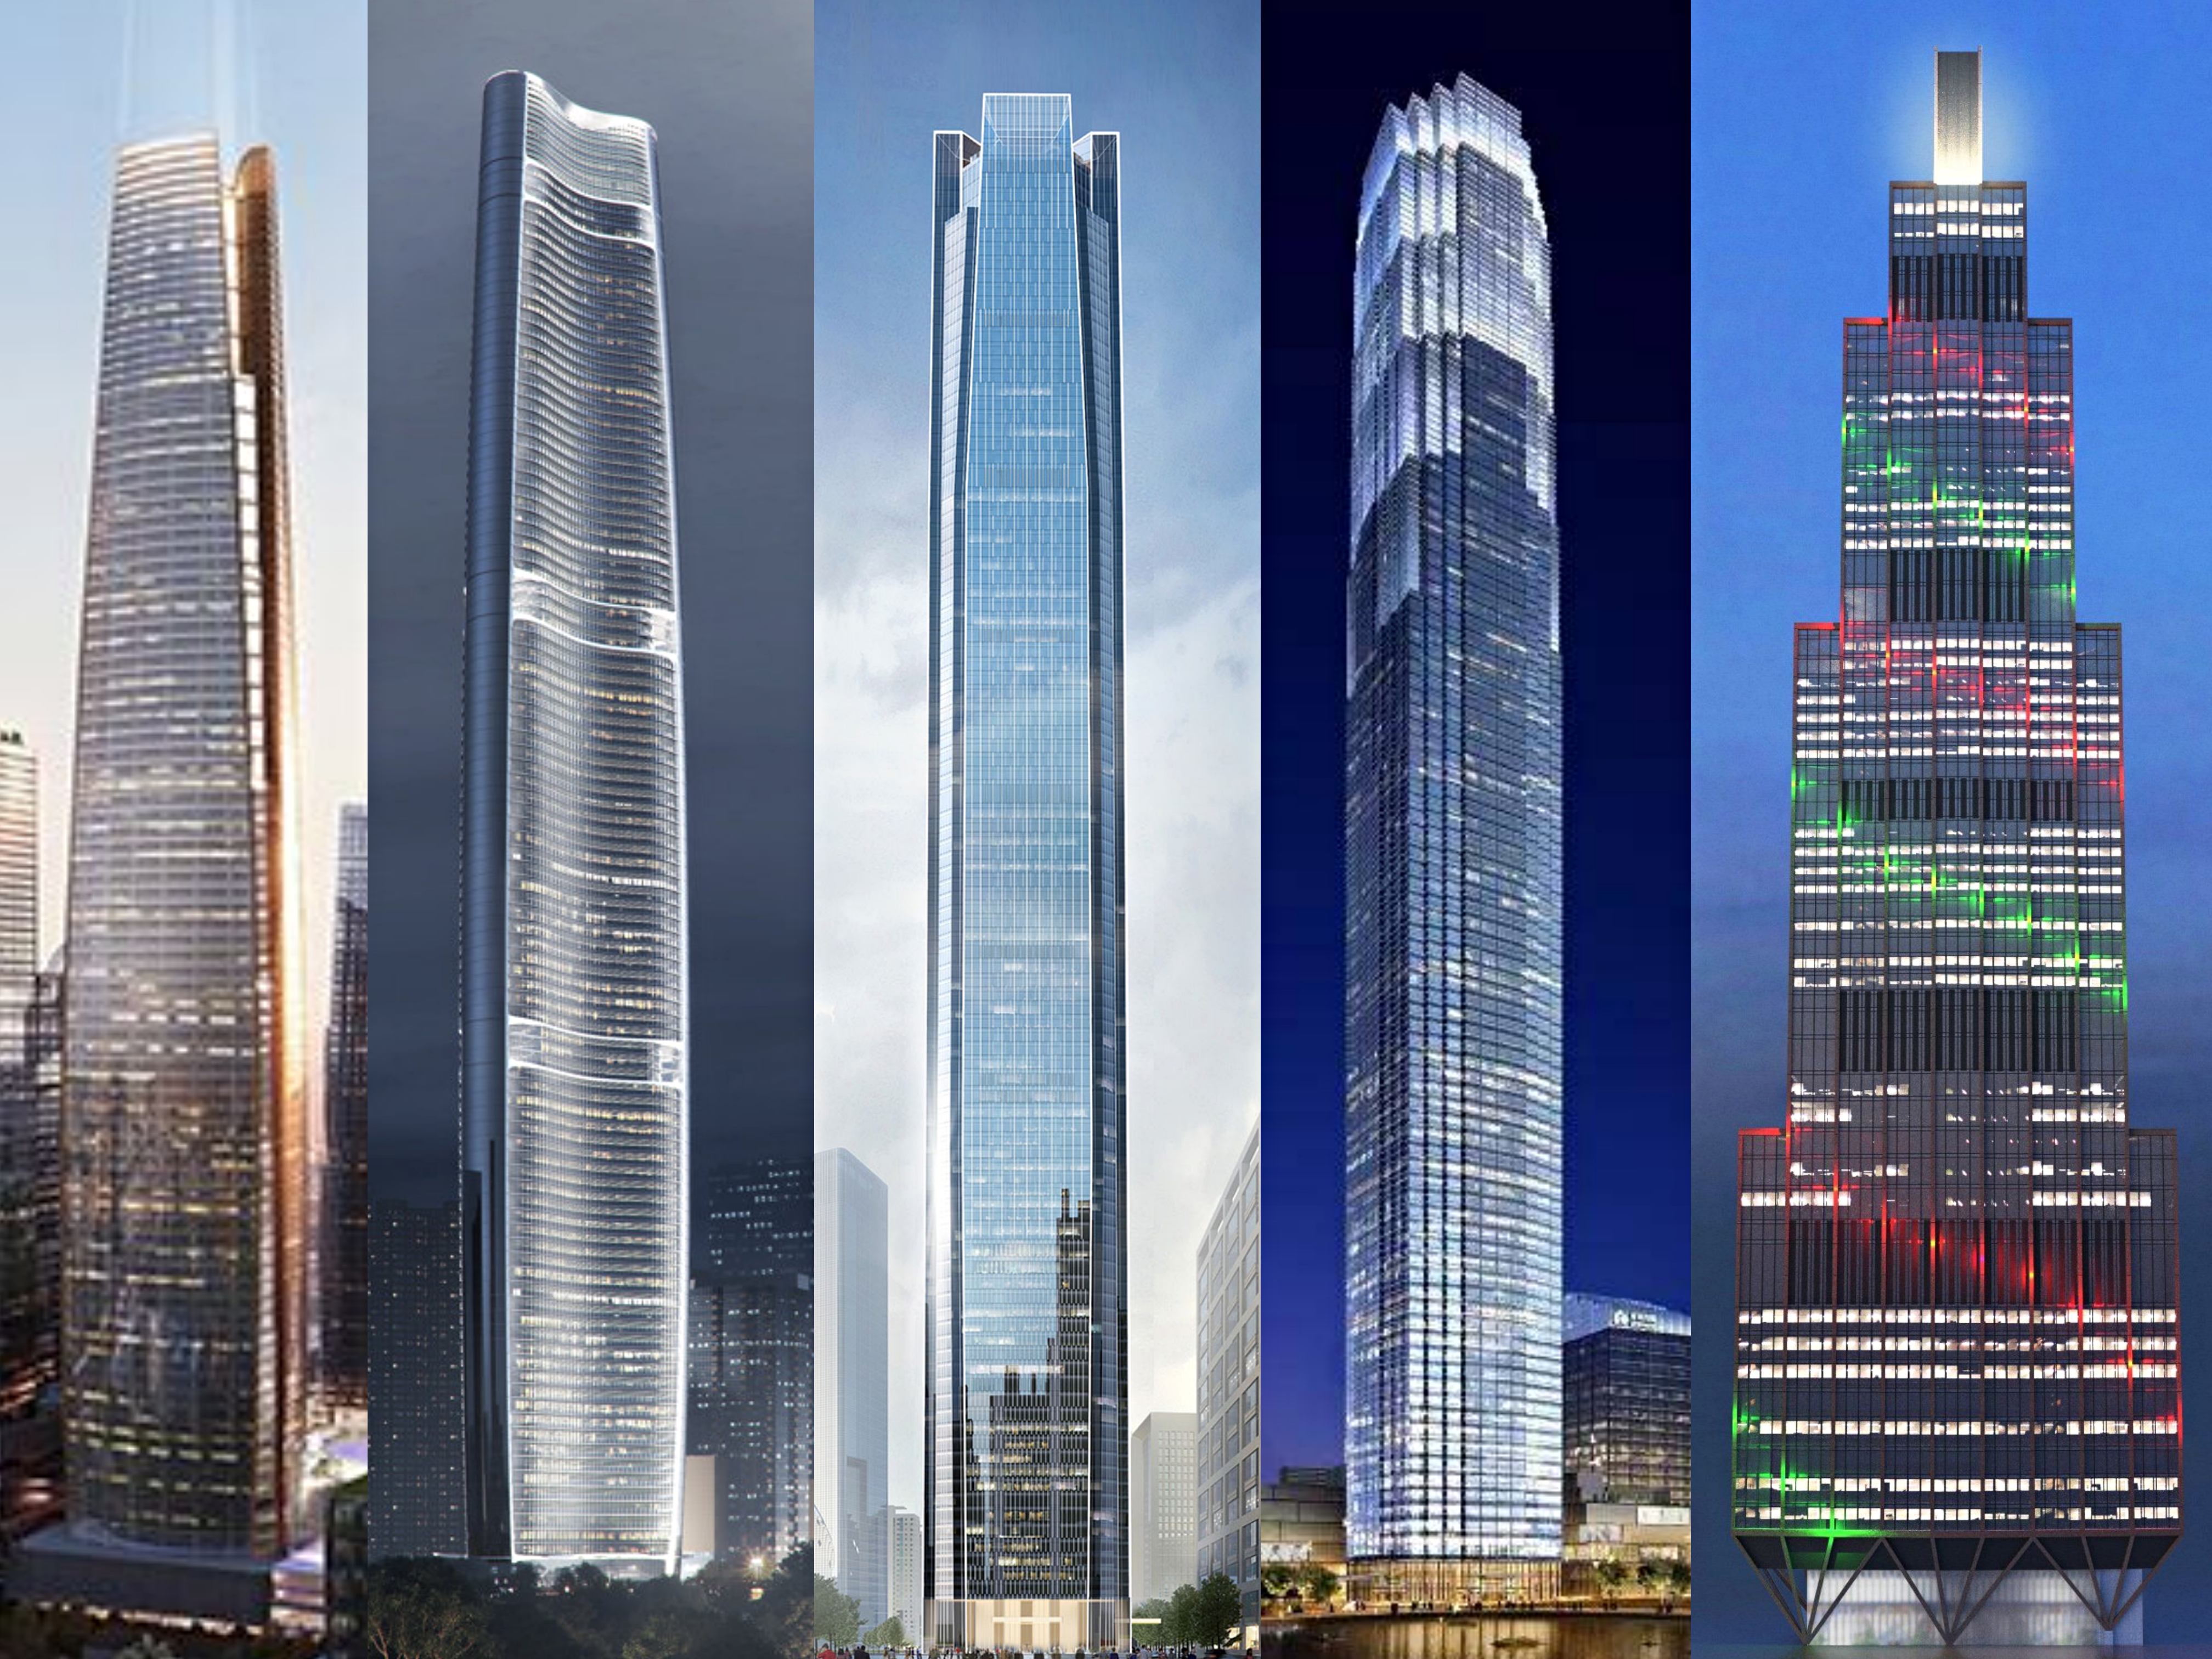 大楼图片建筑(全球在建(核心筒已出地面)最高的十座摩天楼-中国绿地集团占半)